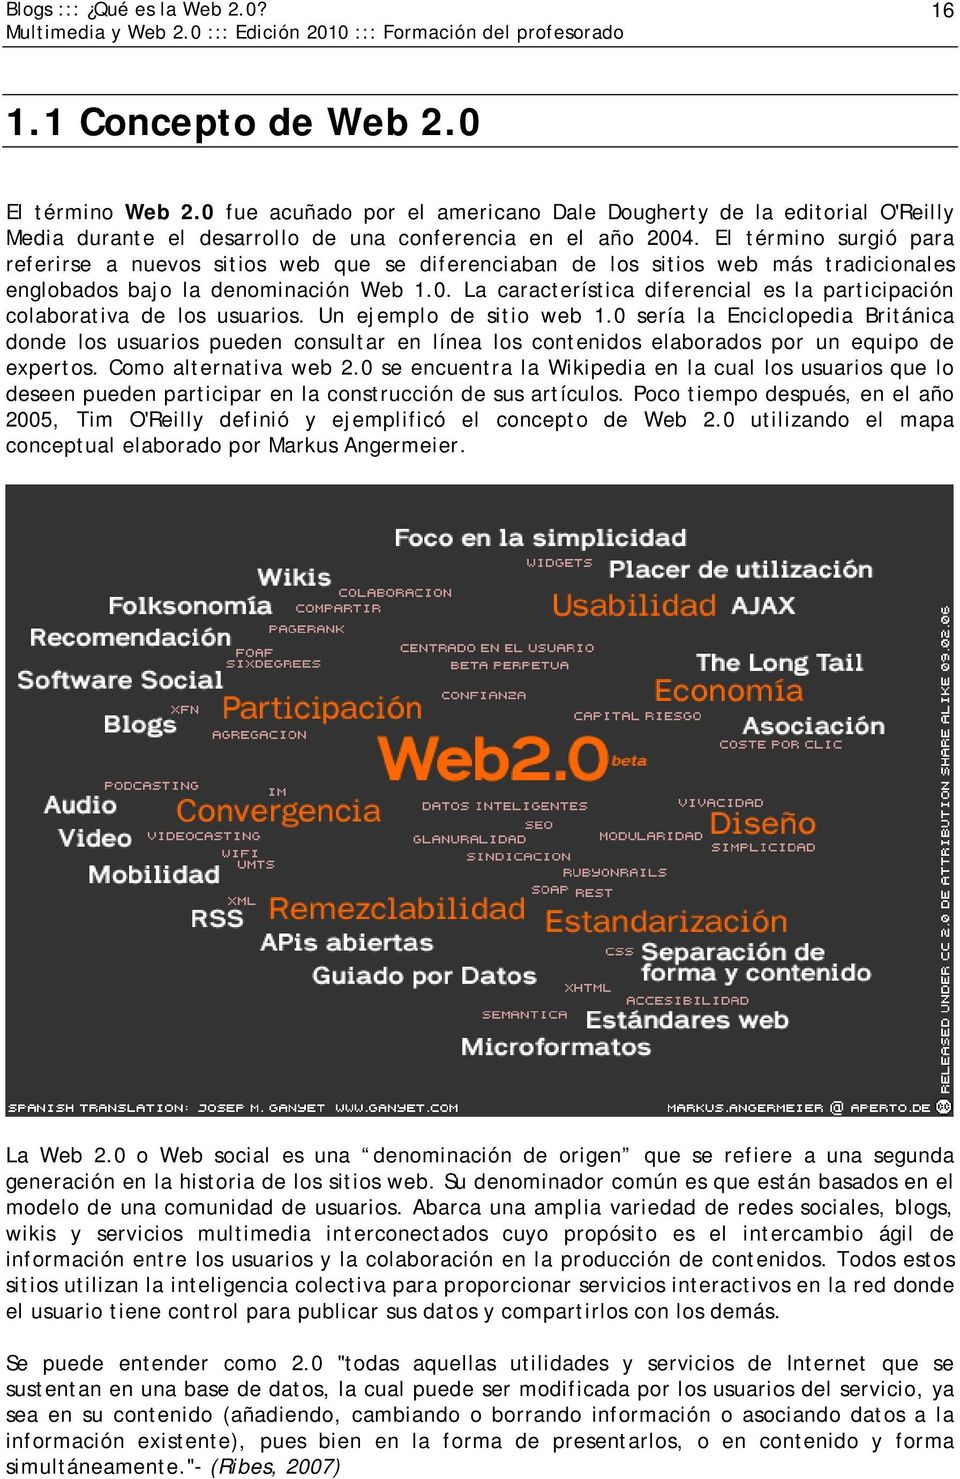 El término surgió para referirse a nuevos sitios web que se diferenciaban de los sitios web más tradicionales englobados bajo la denominación Web 1.0.